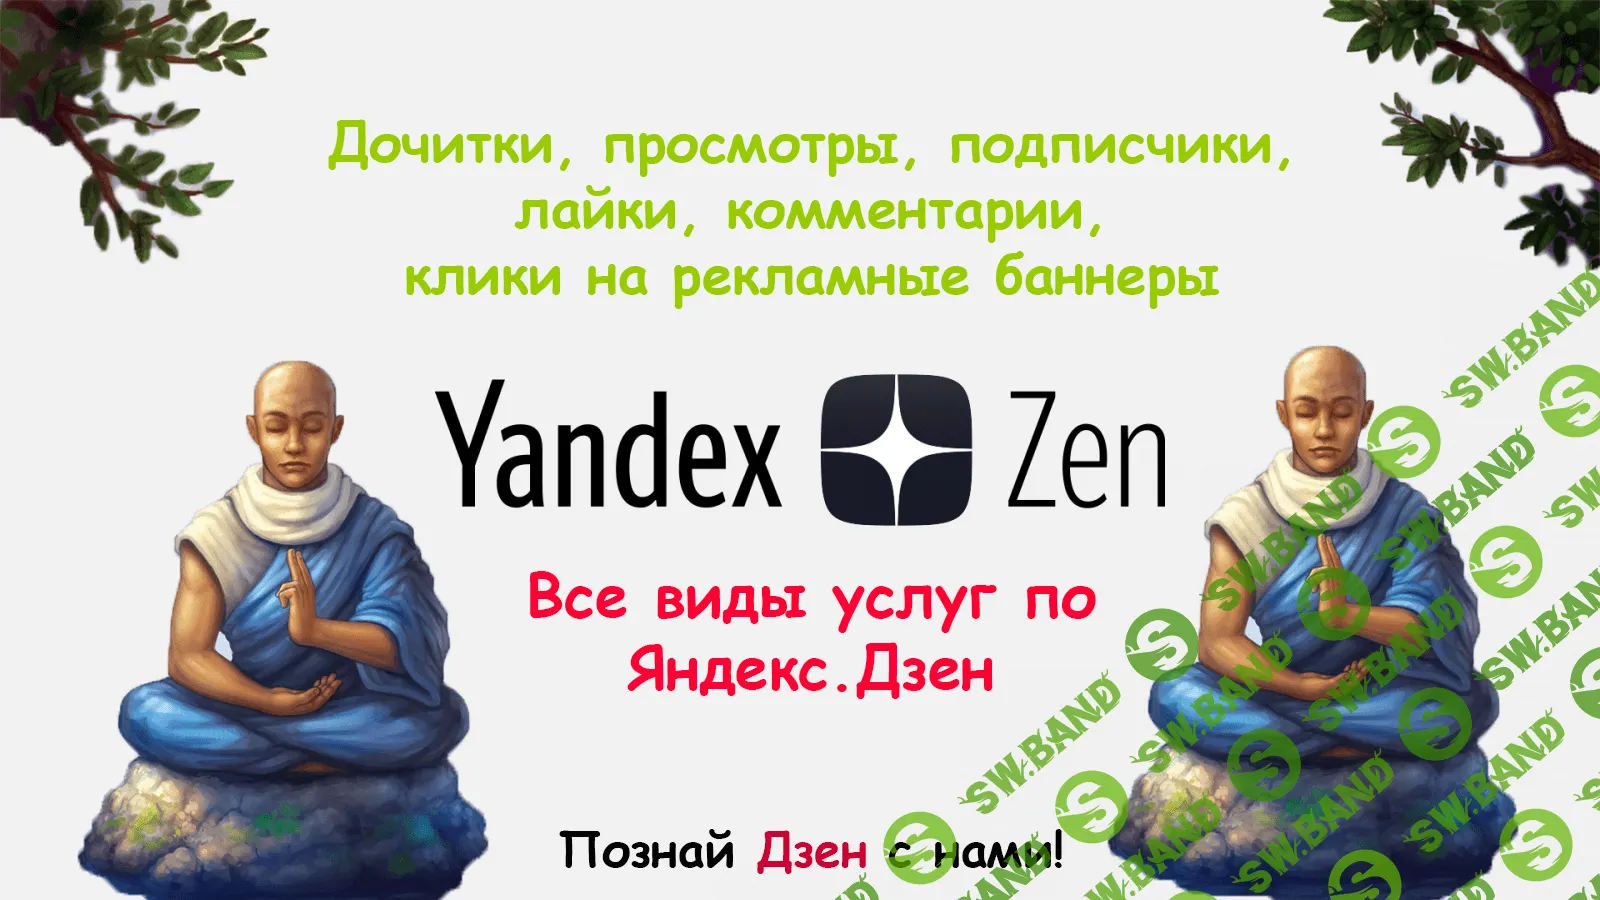 Яндекс.Дзен услуги по накрутке (без нарушений правил Яндекс)